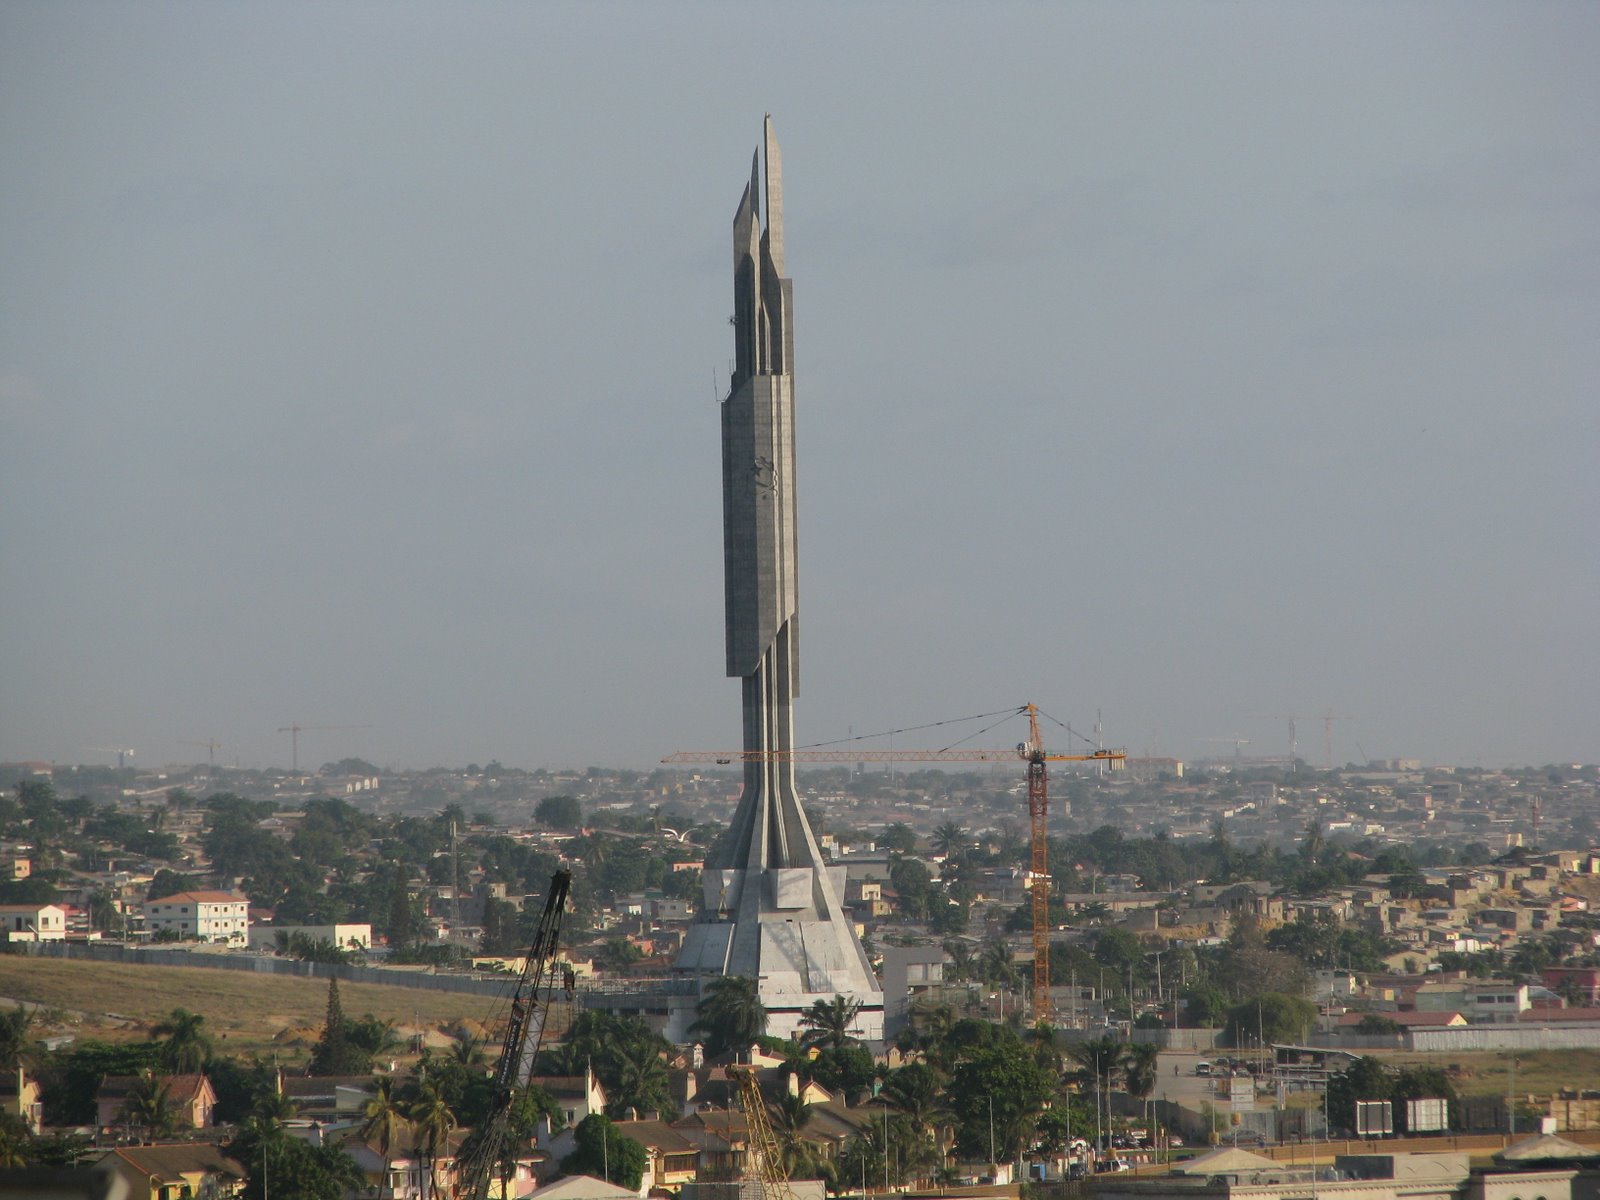 Mausoleum of Agostinho Neto. Luanda 35